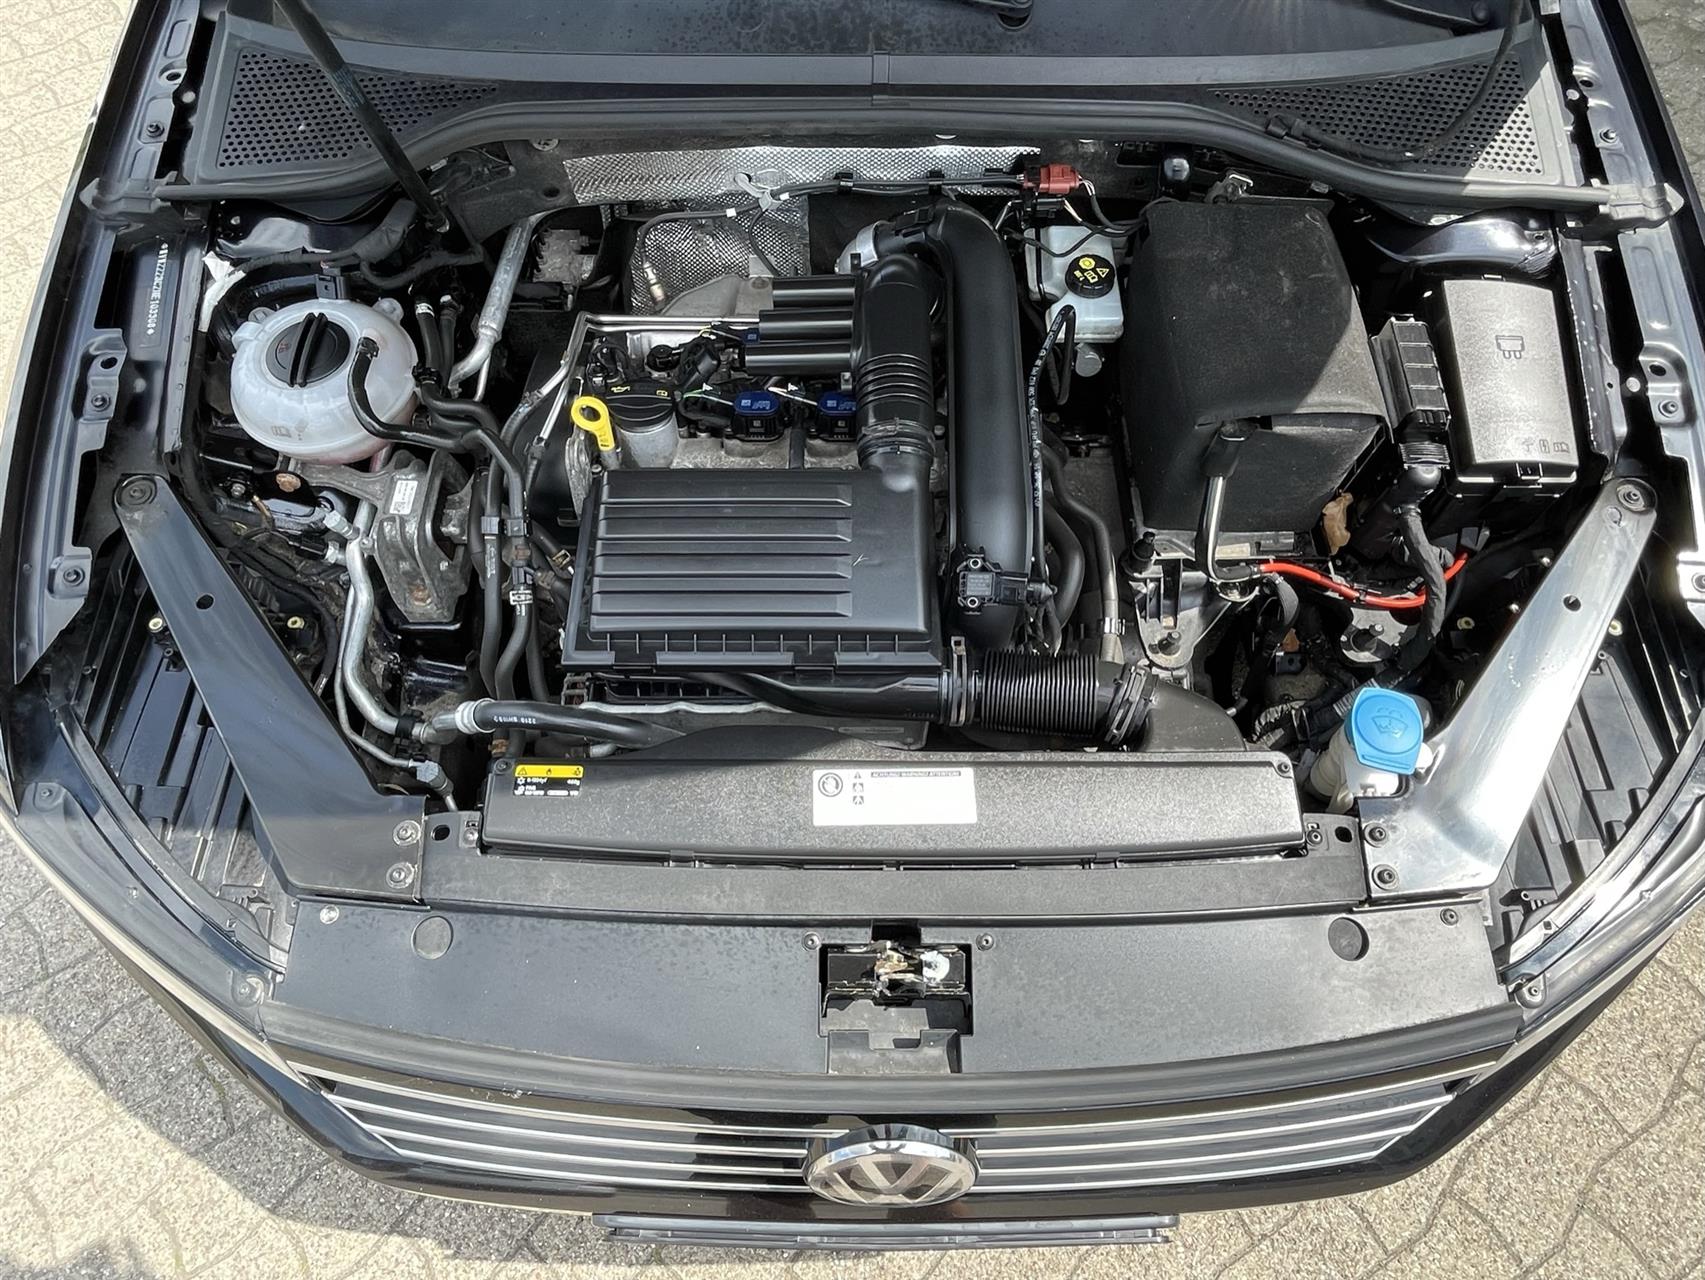 Billede af VW Passat Variant 1,4 TSI BMT ACT Comfortline Plus DSG 150HK Stc 7g Aut.